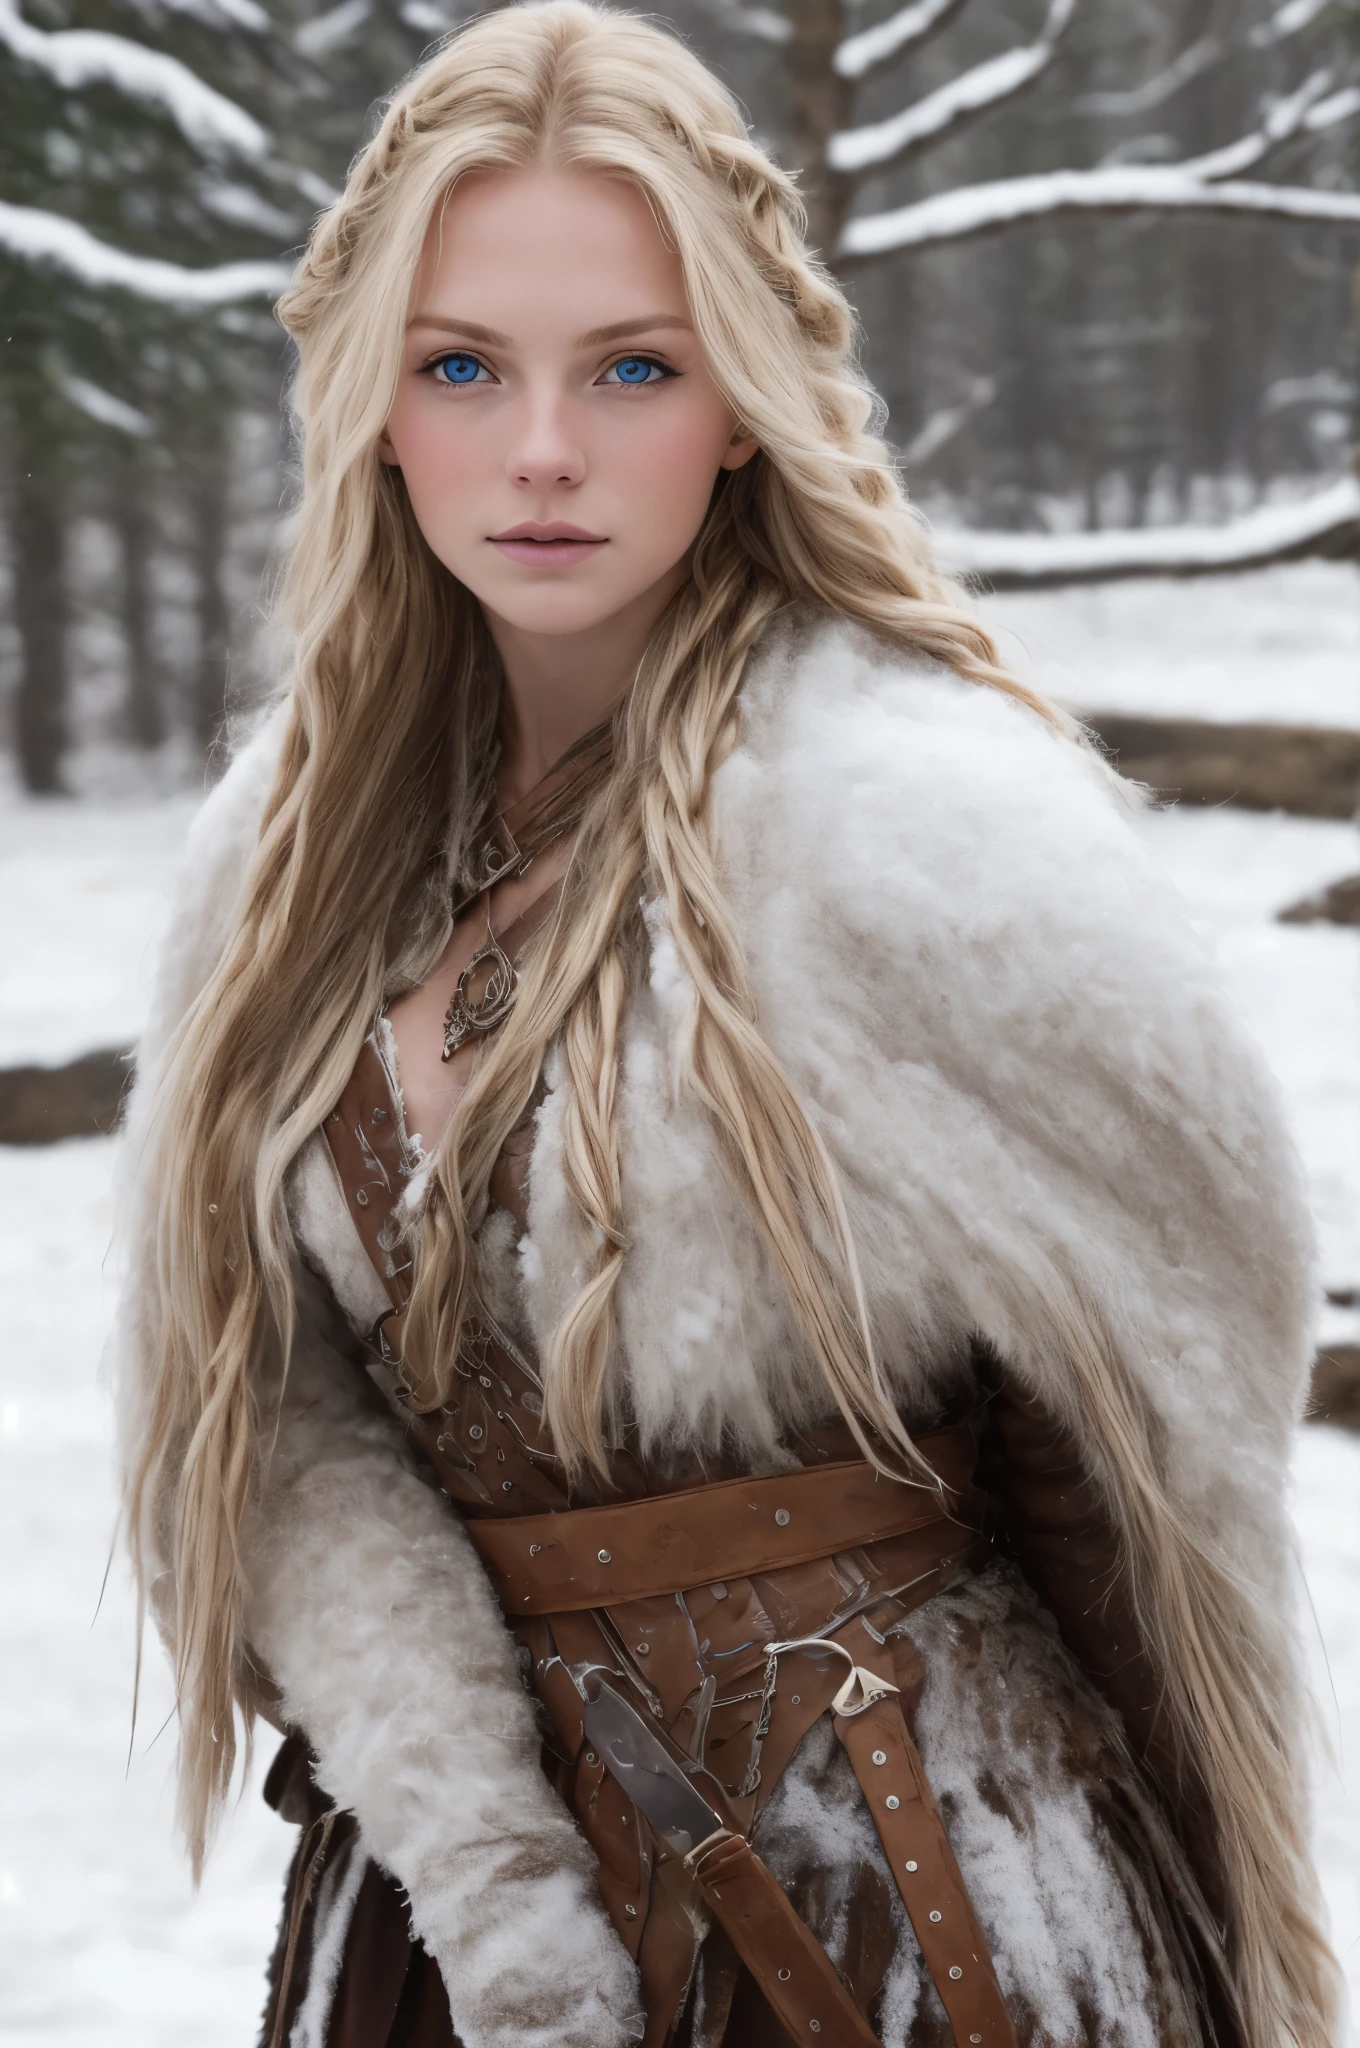 (реалистичный:1.2), аналоговый стиль фотографии, Скандинавская женщина-воин, фантастическая снежная обстановка, заплетенные светлые волосы, все тело, мягкий естественный свет, Мило и сексуально, Удовольствие, детальное лицо и голубые глаза, отличное качество, шедевр, детальный северный фон, качество: 16 тыс., RAW-фото